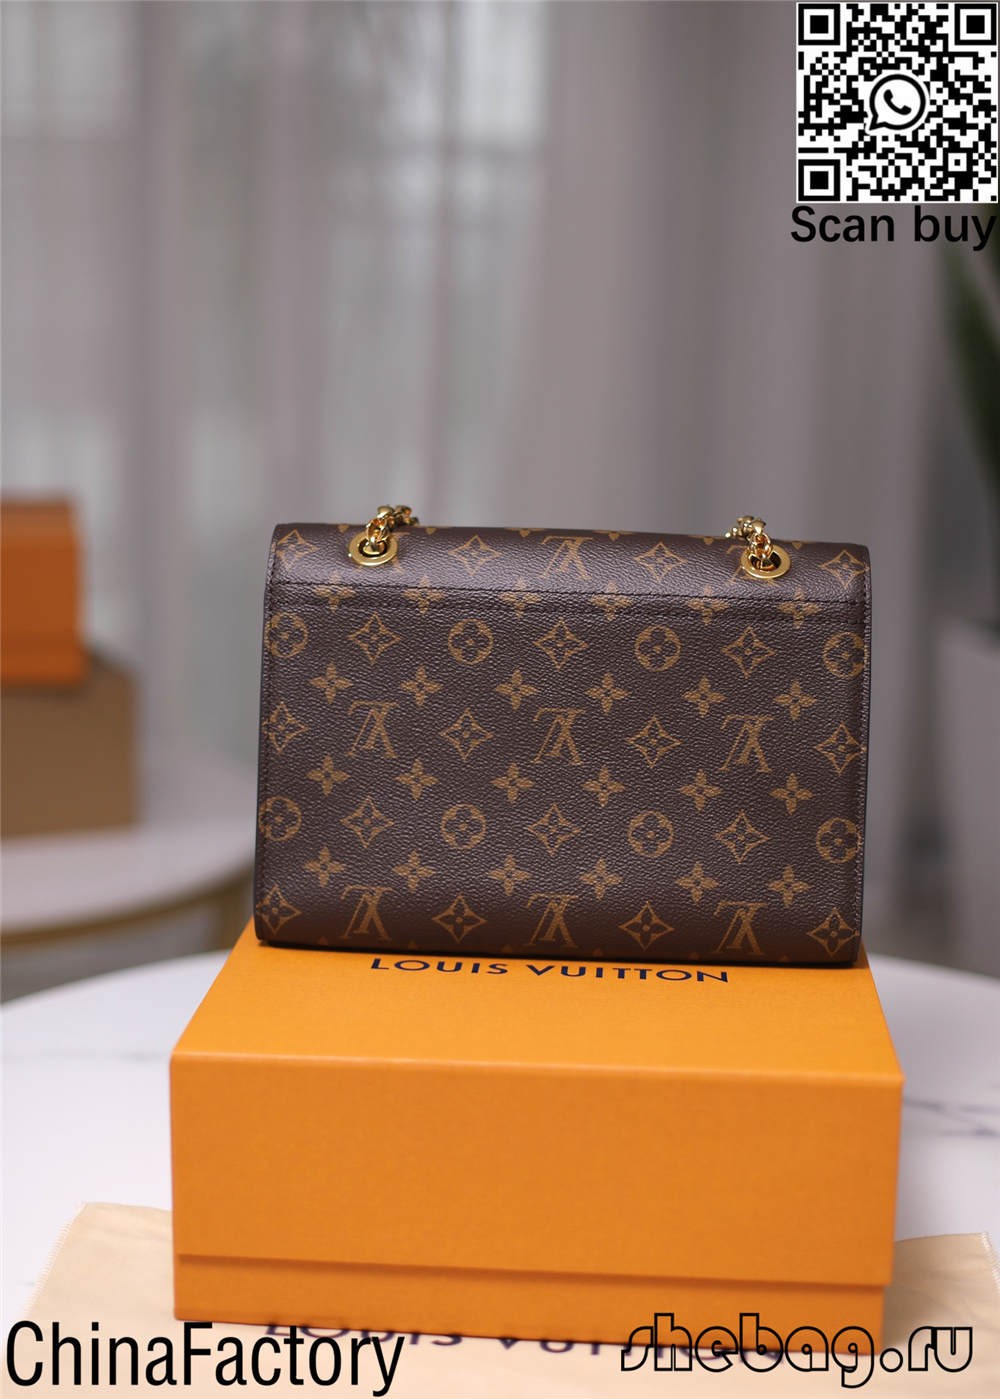 Lēta Louis Vuitton somas kopijas iepirkšanās tiešsaistē (2022. gada jaunais izdevums) — labākās kvalitātes viltotās Louis Vuitton somas tiešsaistes veikals, dizainera somas kopija ru